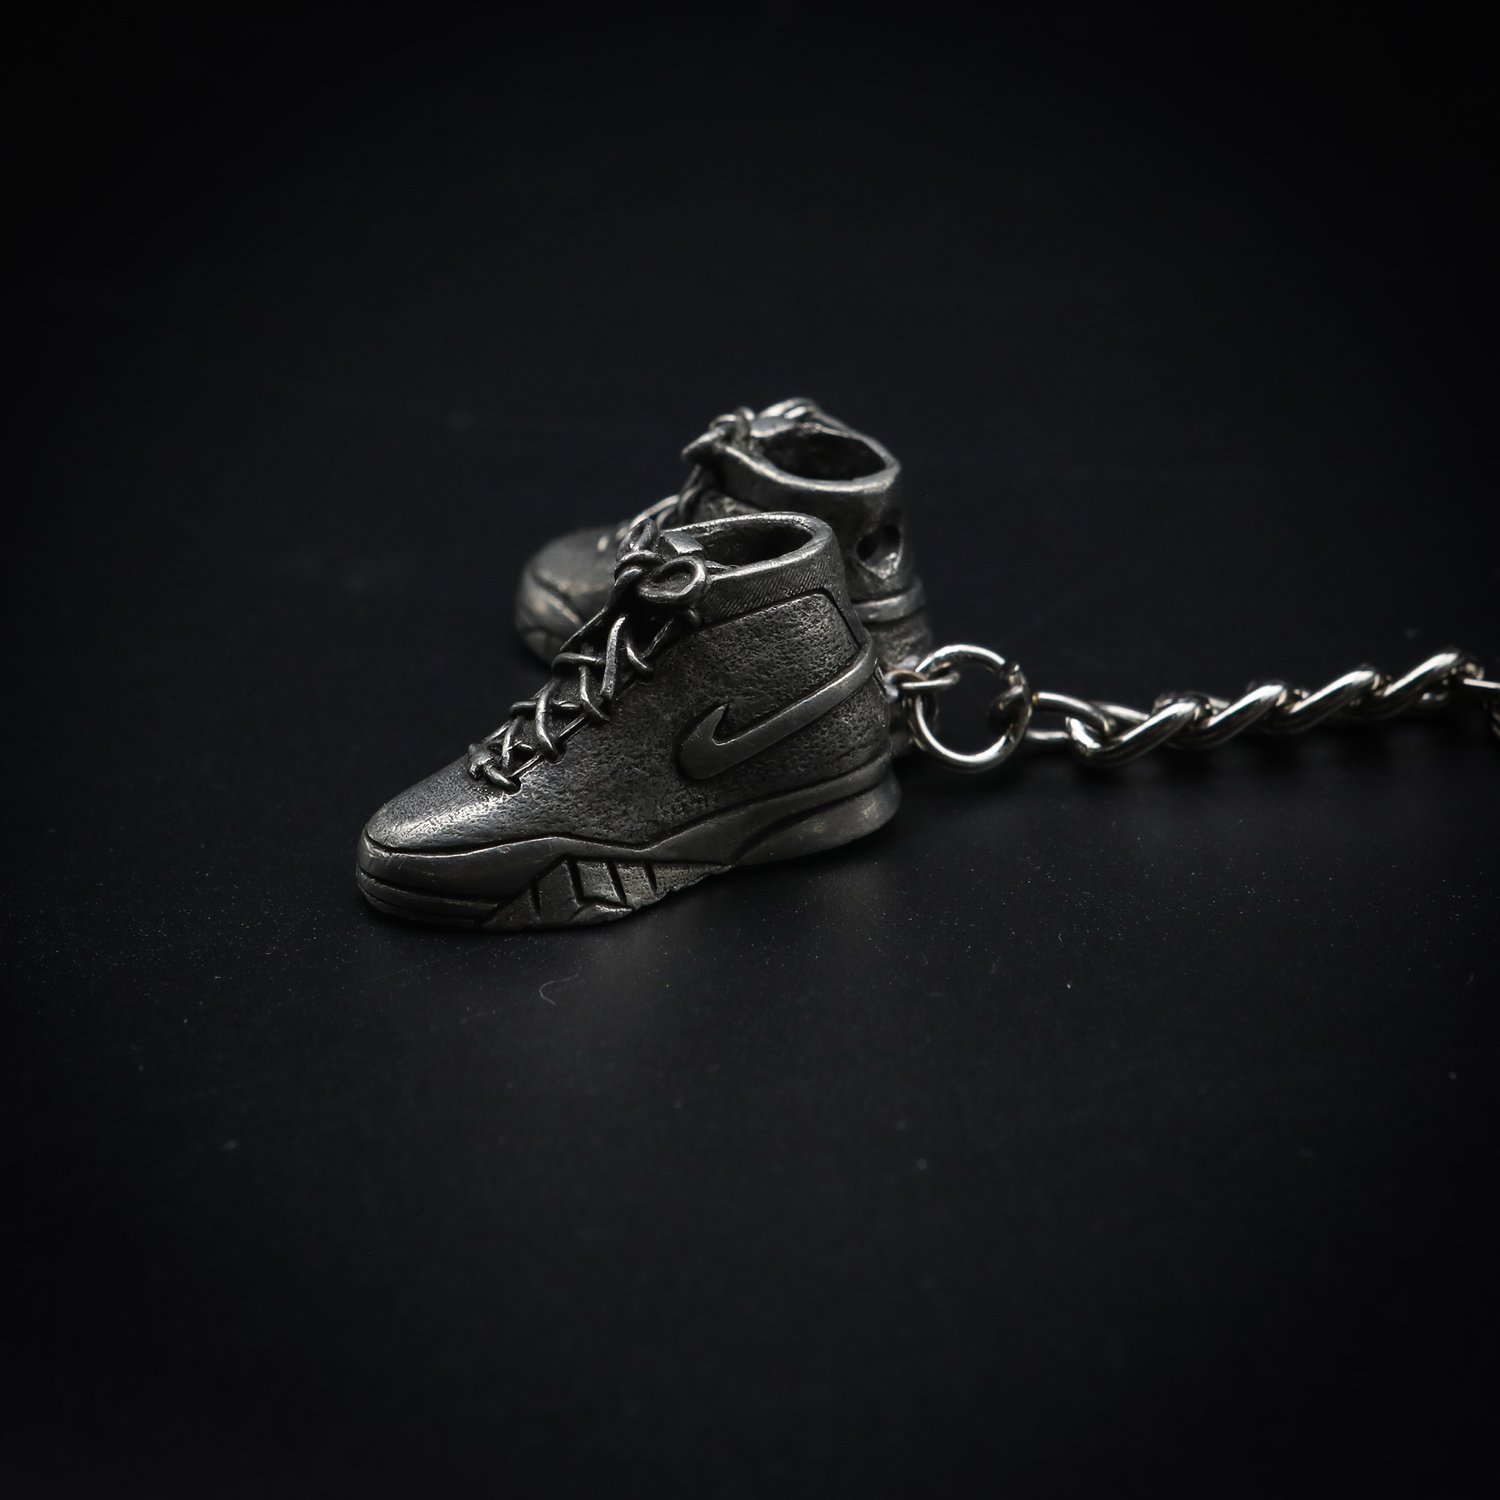 Miniature Nike Shoes 